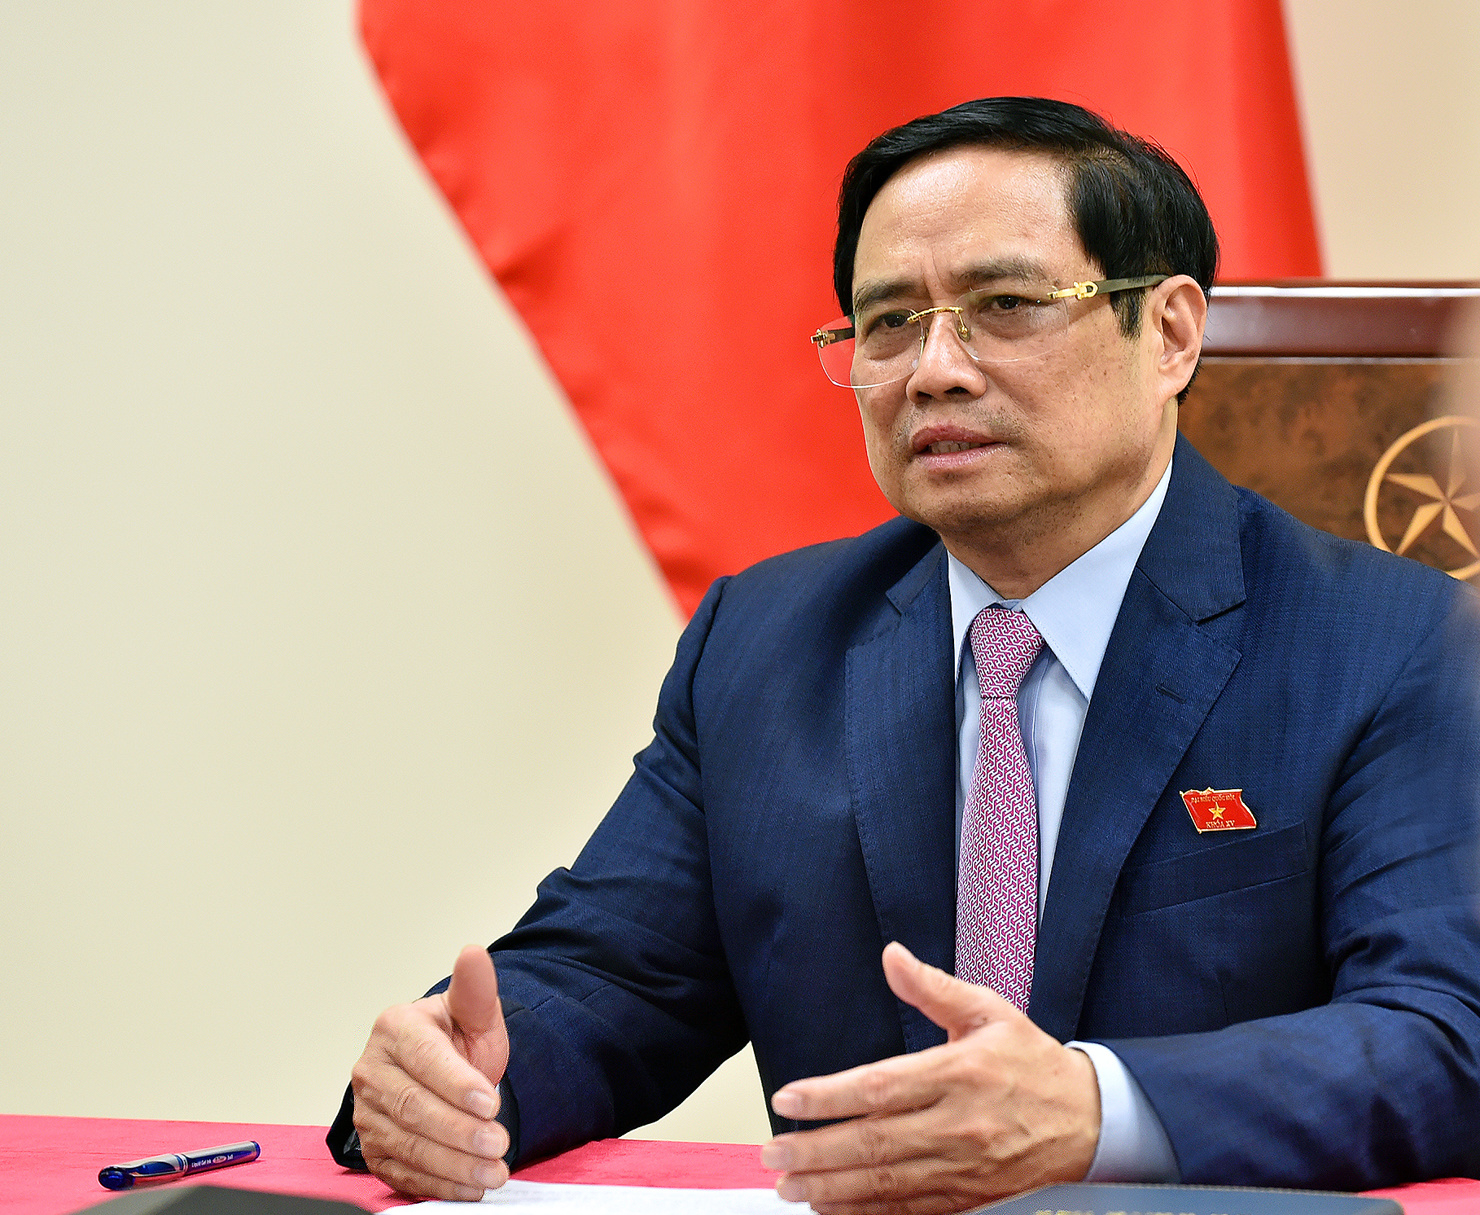 Tại Hội nghị thượng đỉnh thương mại dịch vụ toàn cầu năm 2021, Thủ tướng Phạm Minh Chính sẽ có bài  phát biểu quan trọng về quan điểm của Việt Nam đối với sự phát triển kinh tế số, công nghệ số và hợp tác quốc tế trong lĩnh vực này.